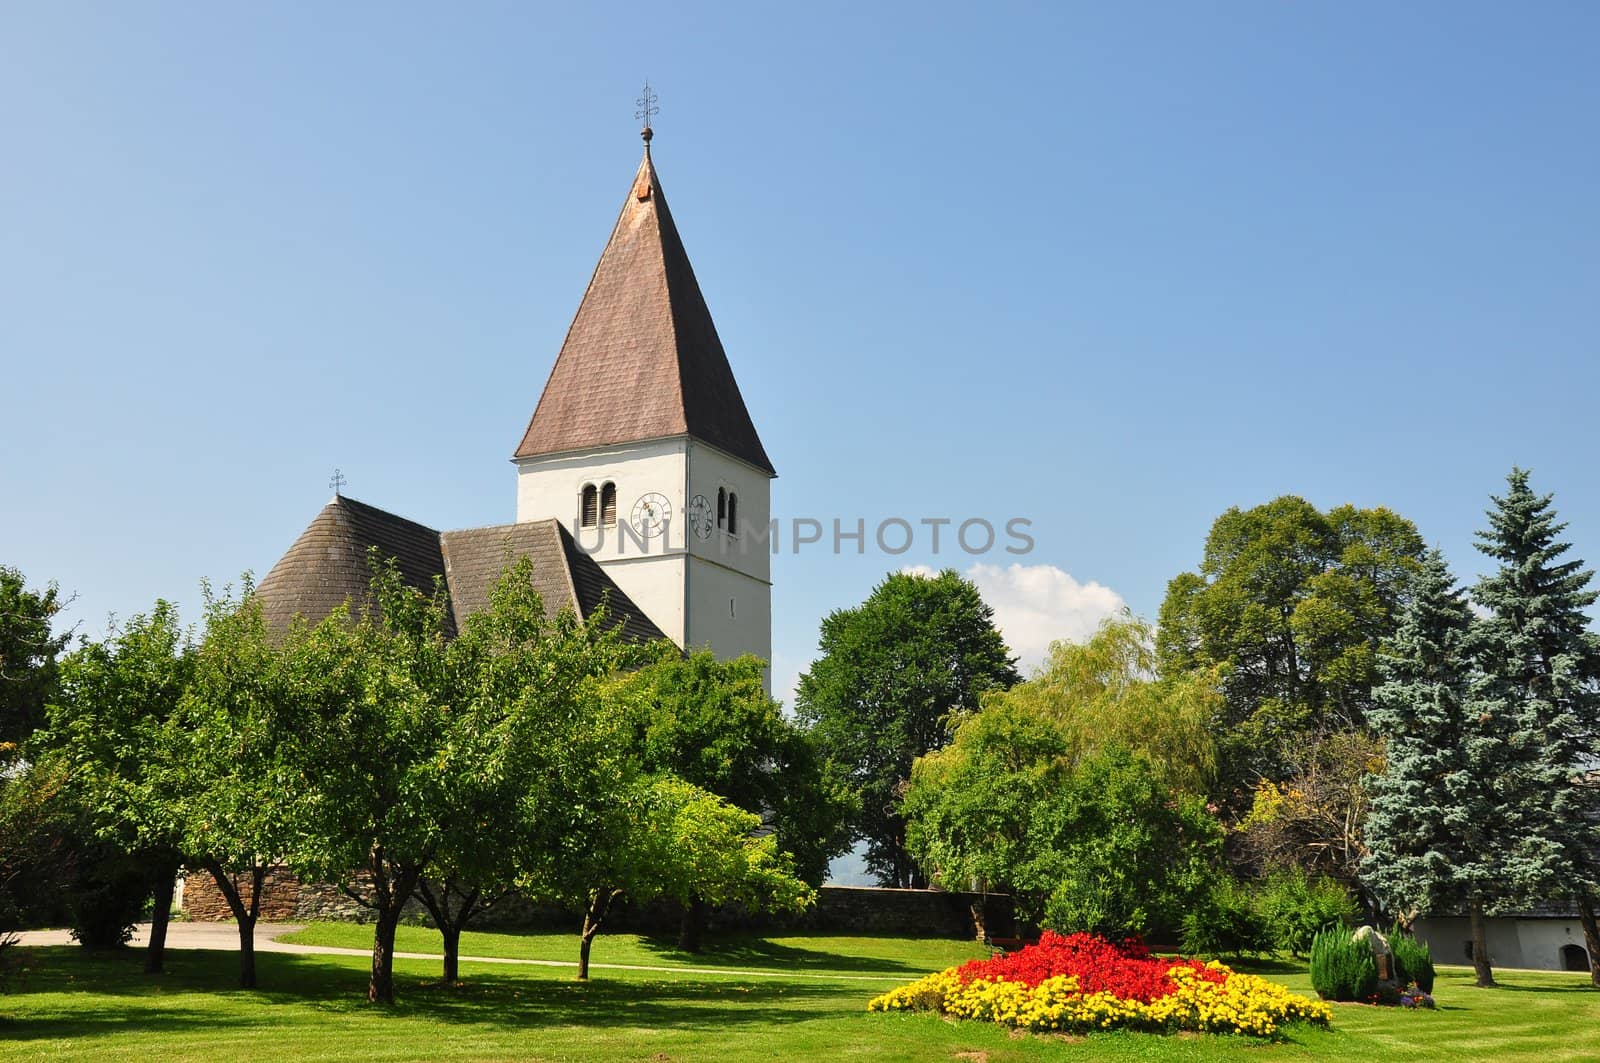 Church in Freiland, Styria, Austria by rbiedermann